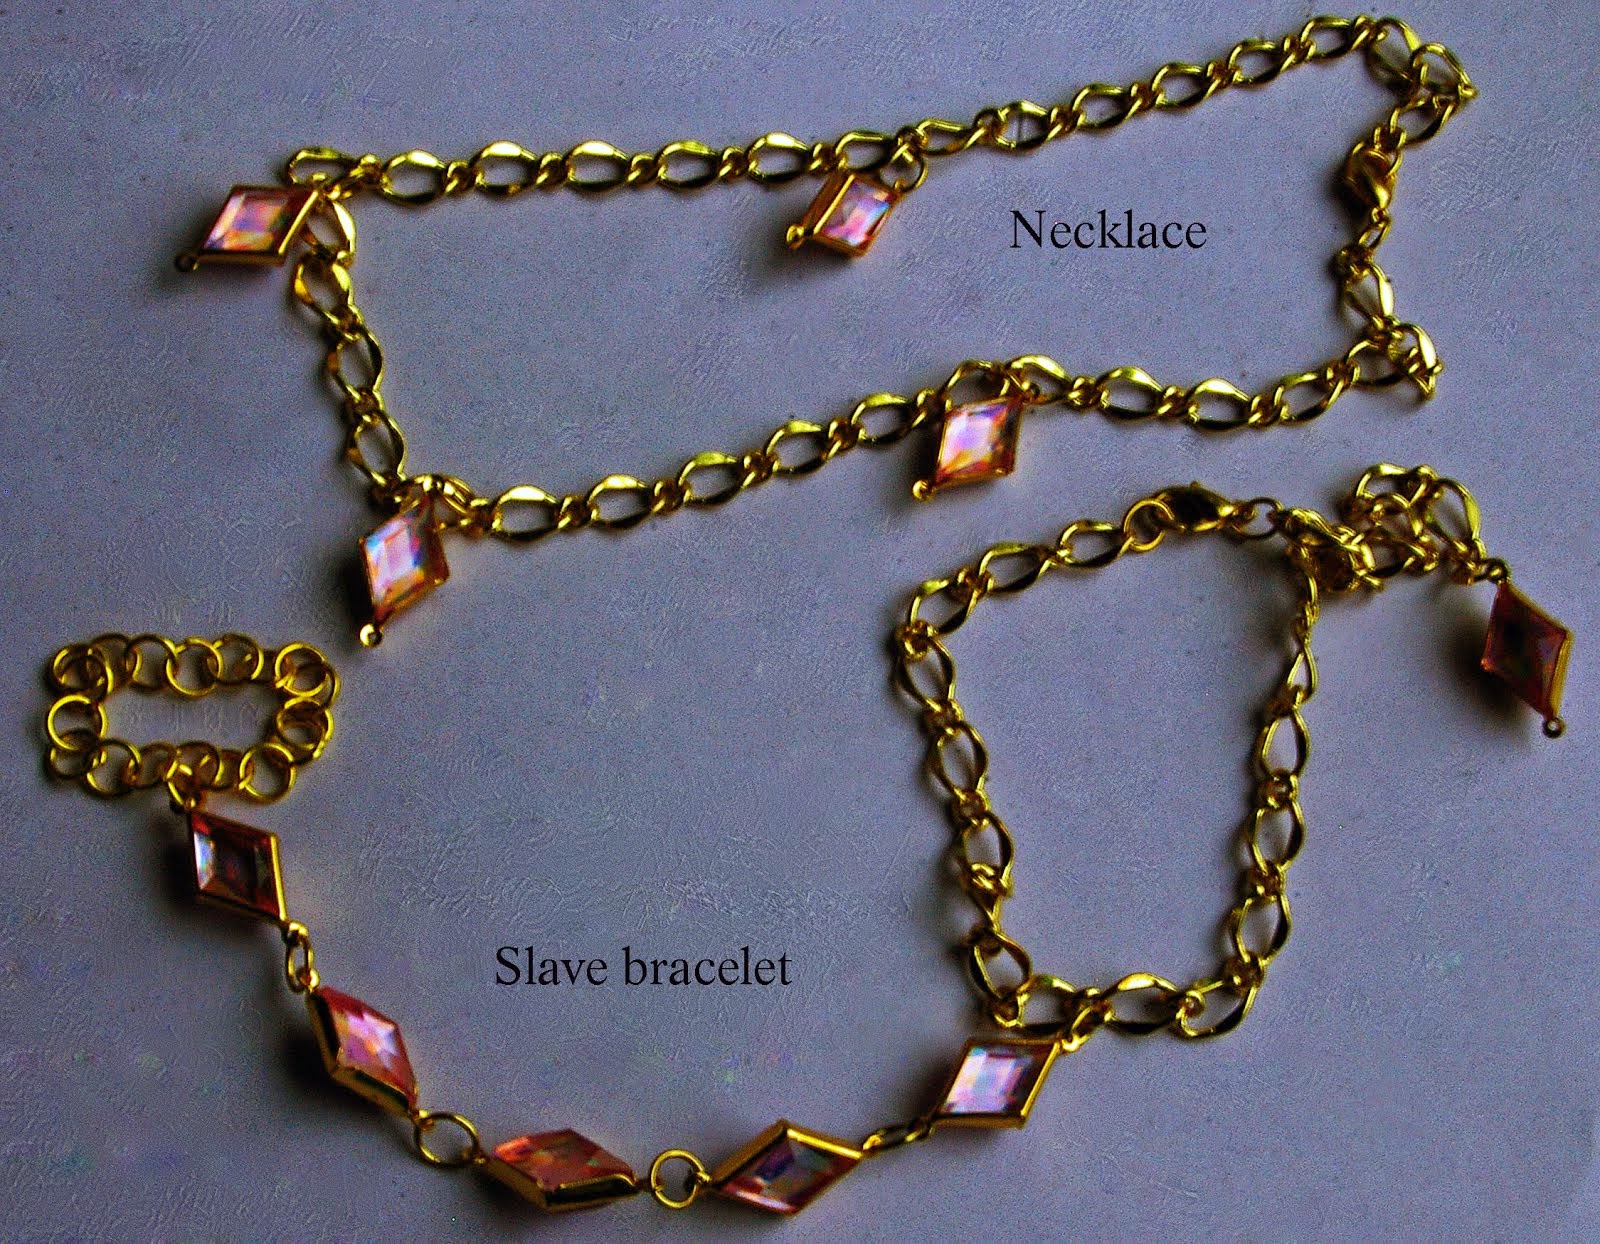 Slave bracelet and necklace